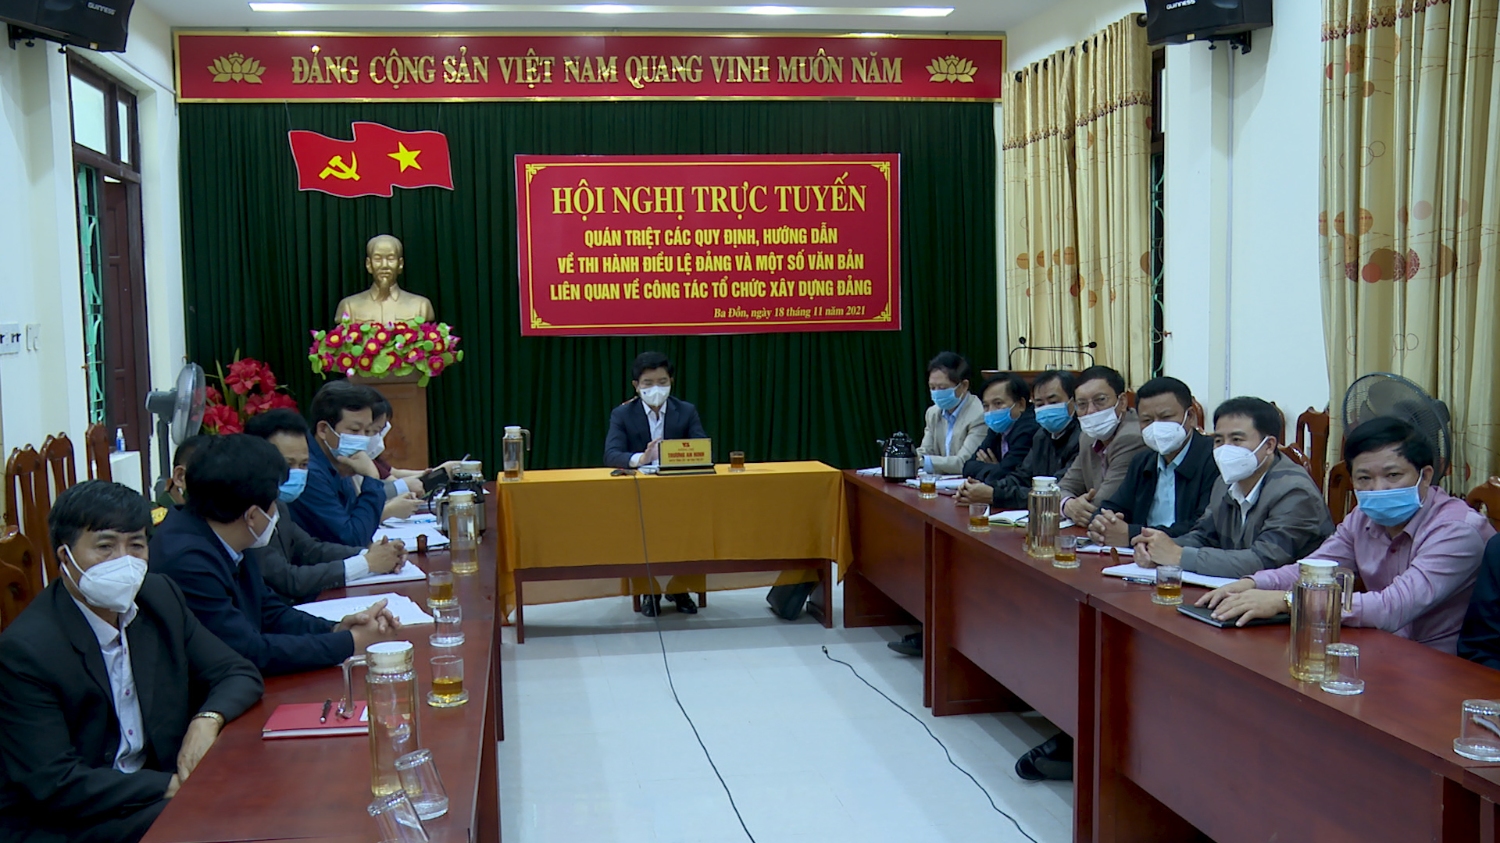 Thị xã Ba Đồn Tham gia hội nghị trực tuyến quán triệt các quy định, hướng dẫn về thi hành Điều lệ Đảng